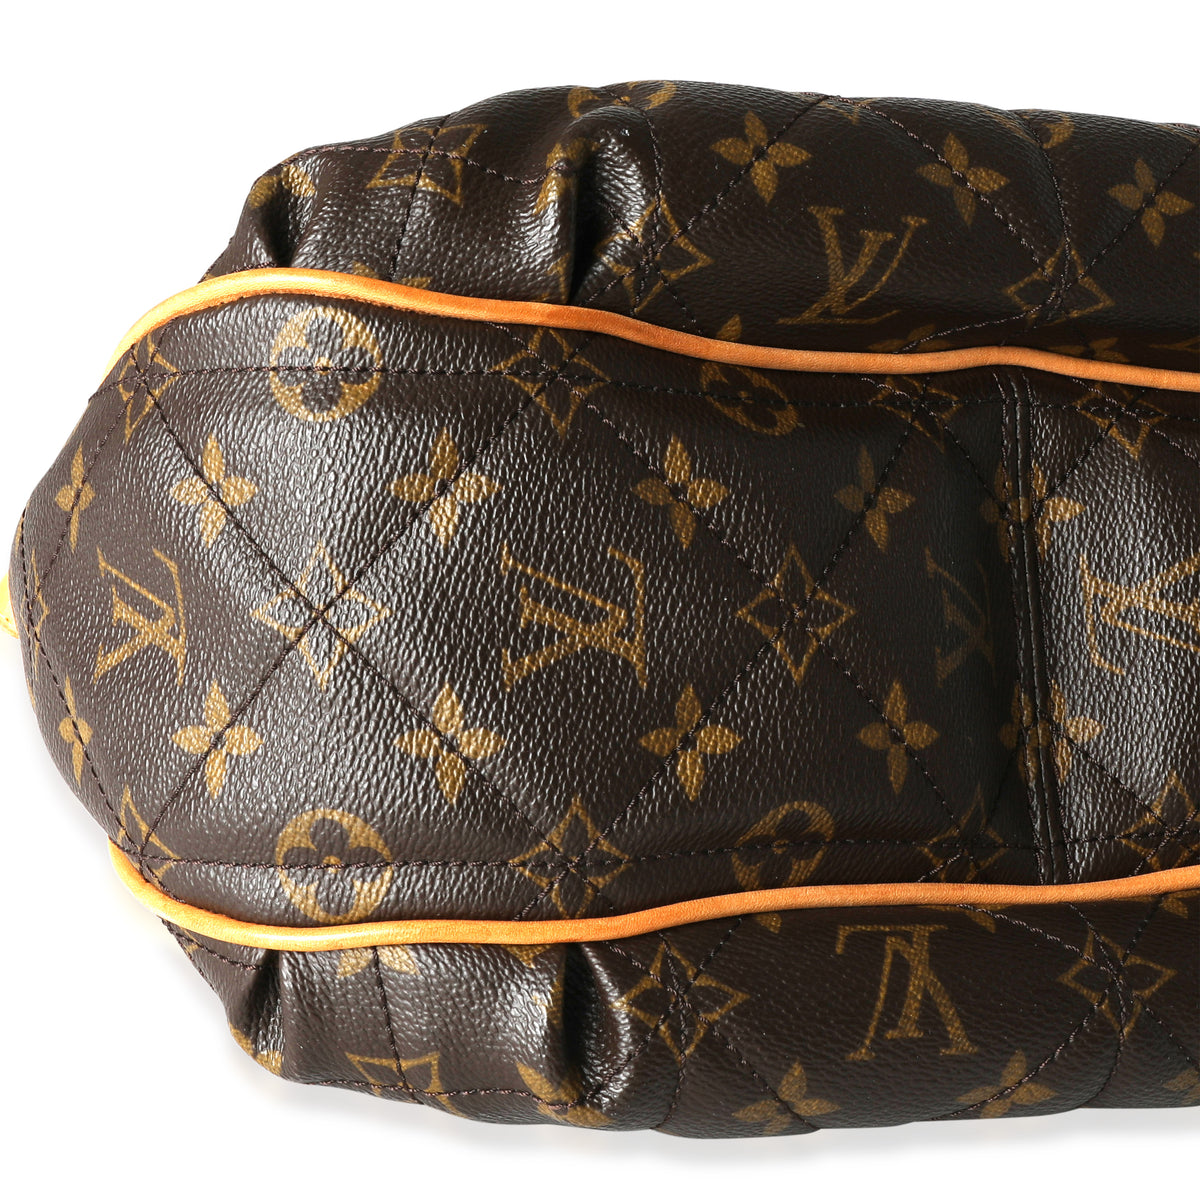 Louis Vuitton Monogram Etoile City PM - Brown Shoulder Bags